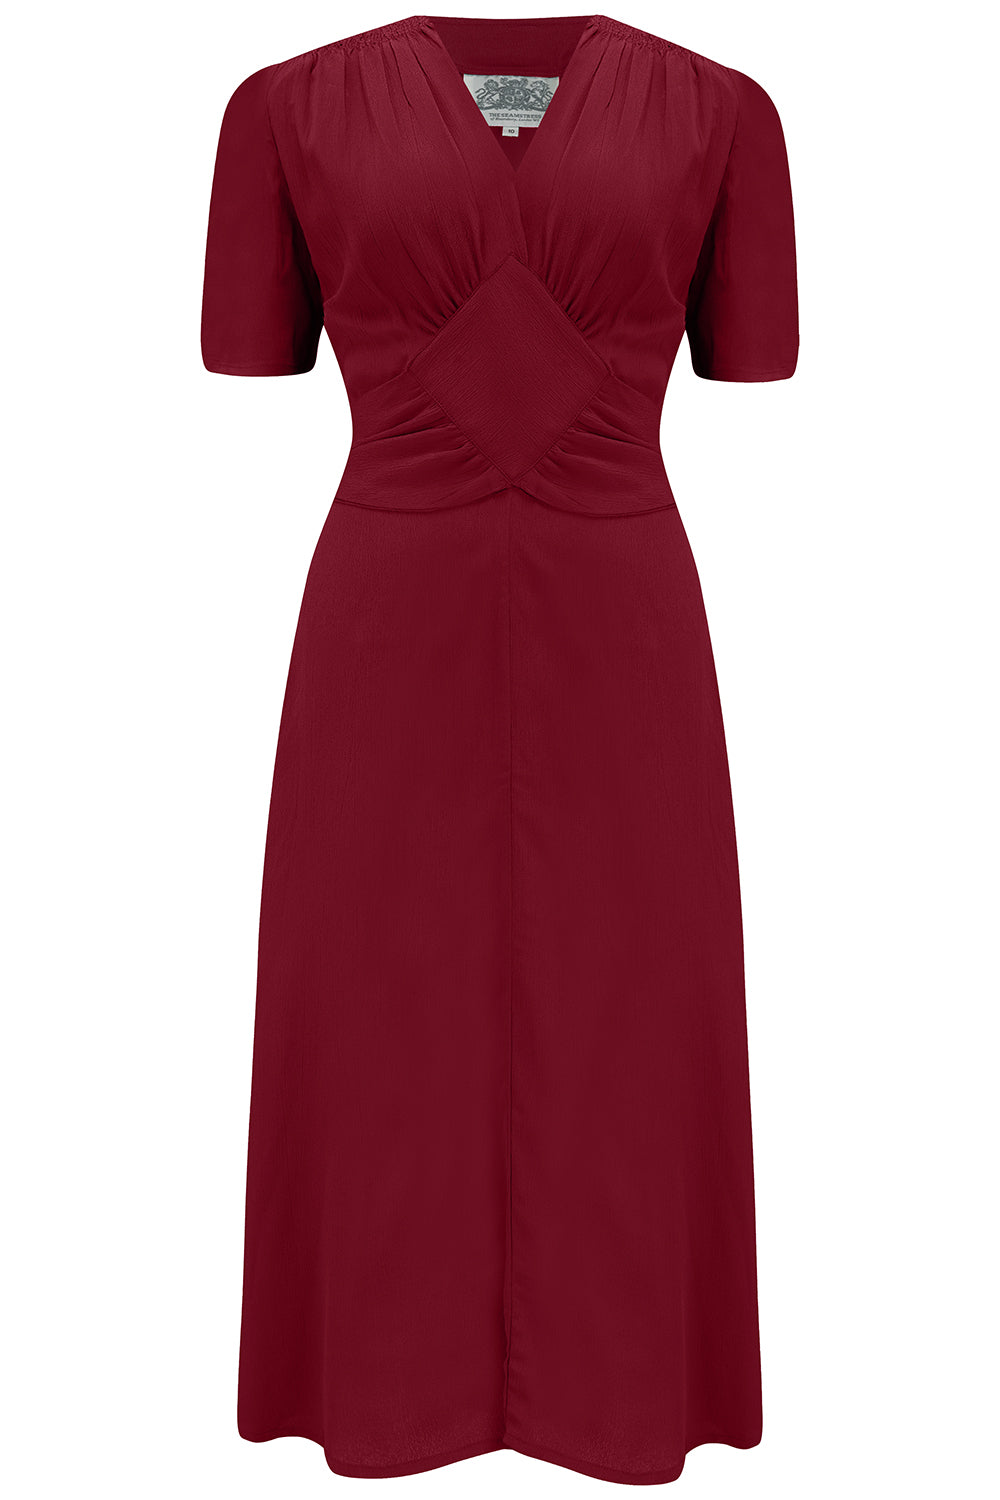 Das „Ruby“-Kleid in Wein, klassisches Langarmkleid im Stil der 1940er Jahre